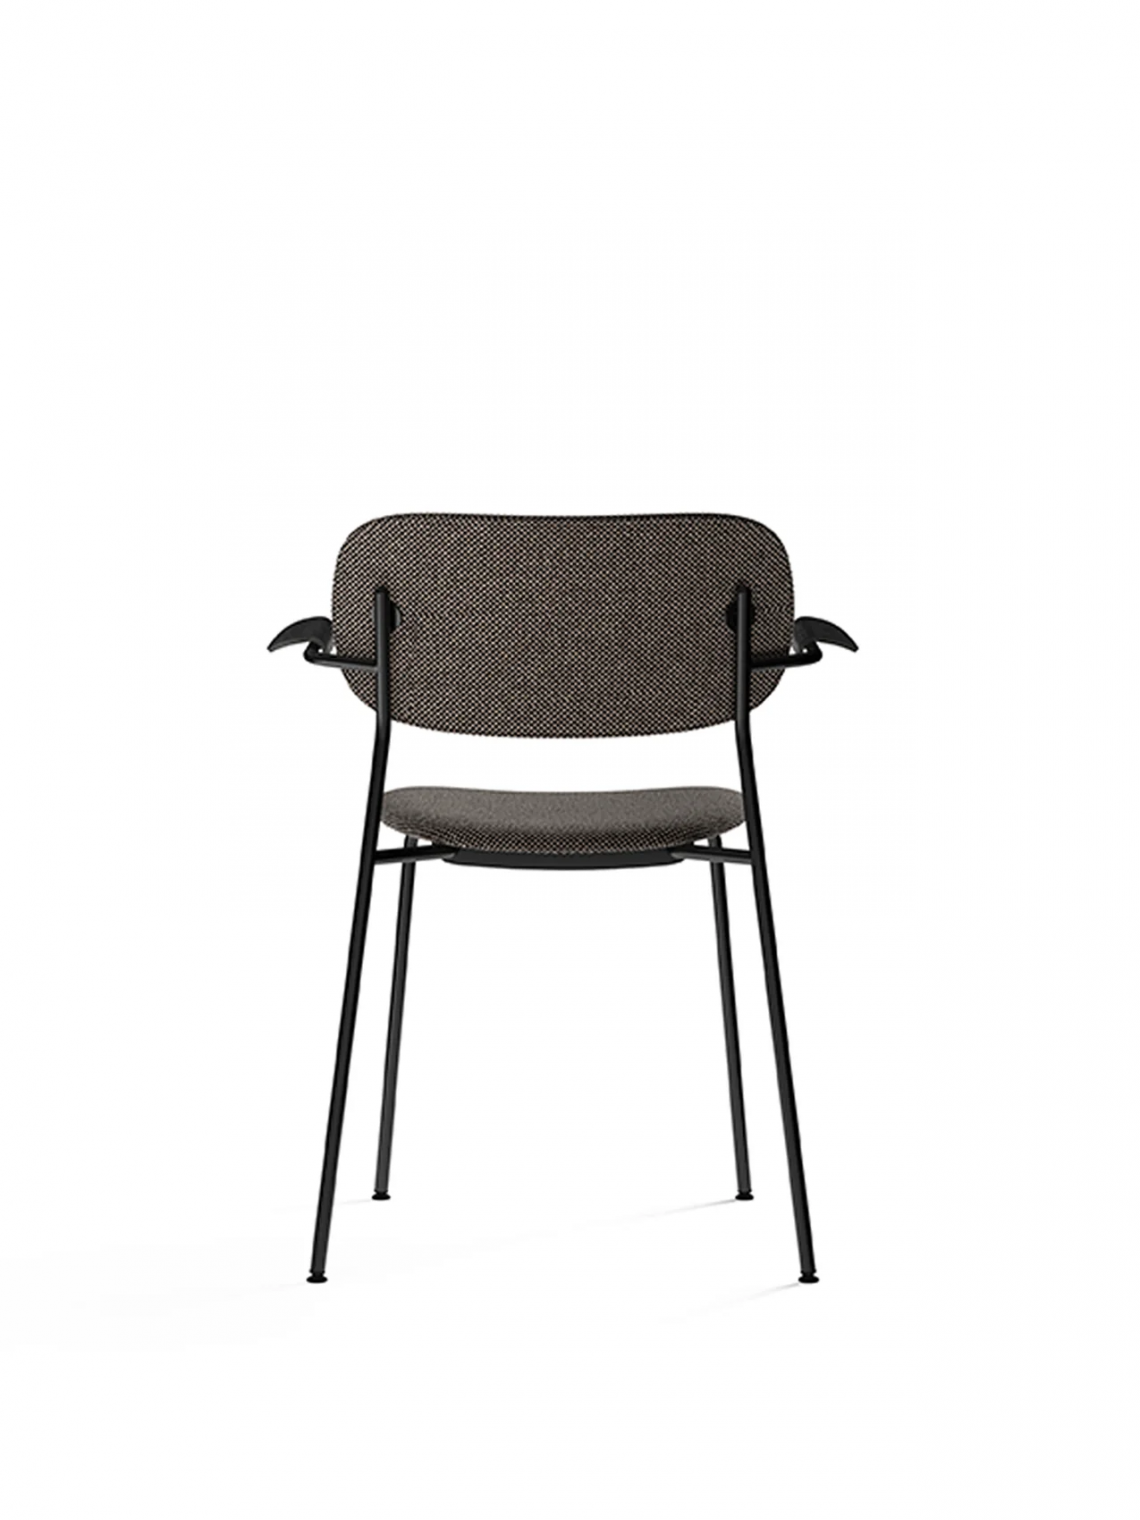 Co with armrest, Black, Veneer餐椅 细节图3